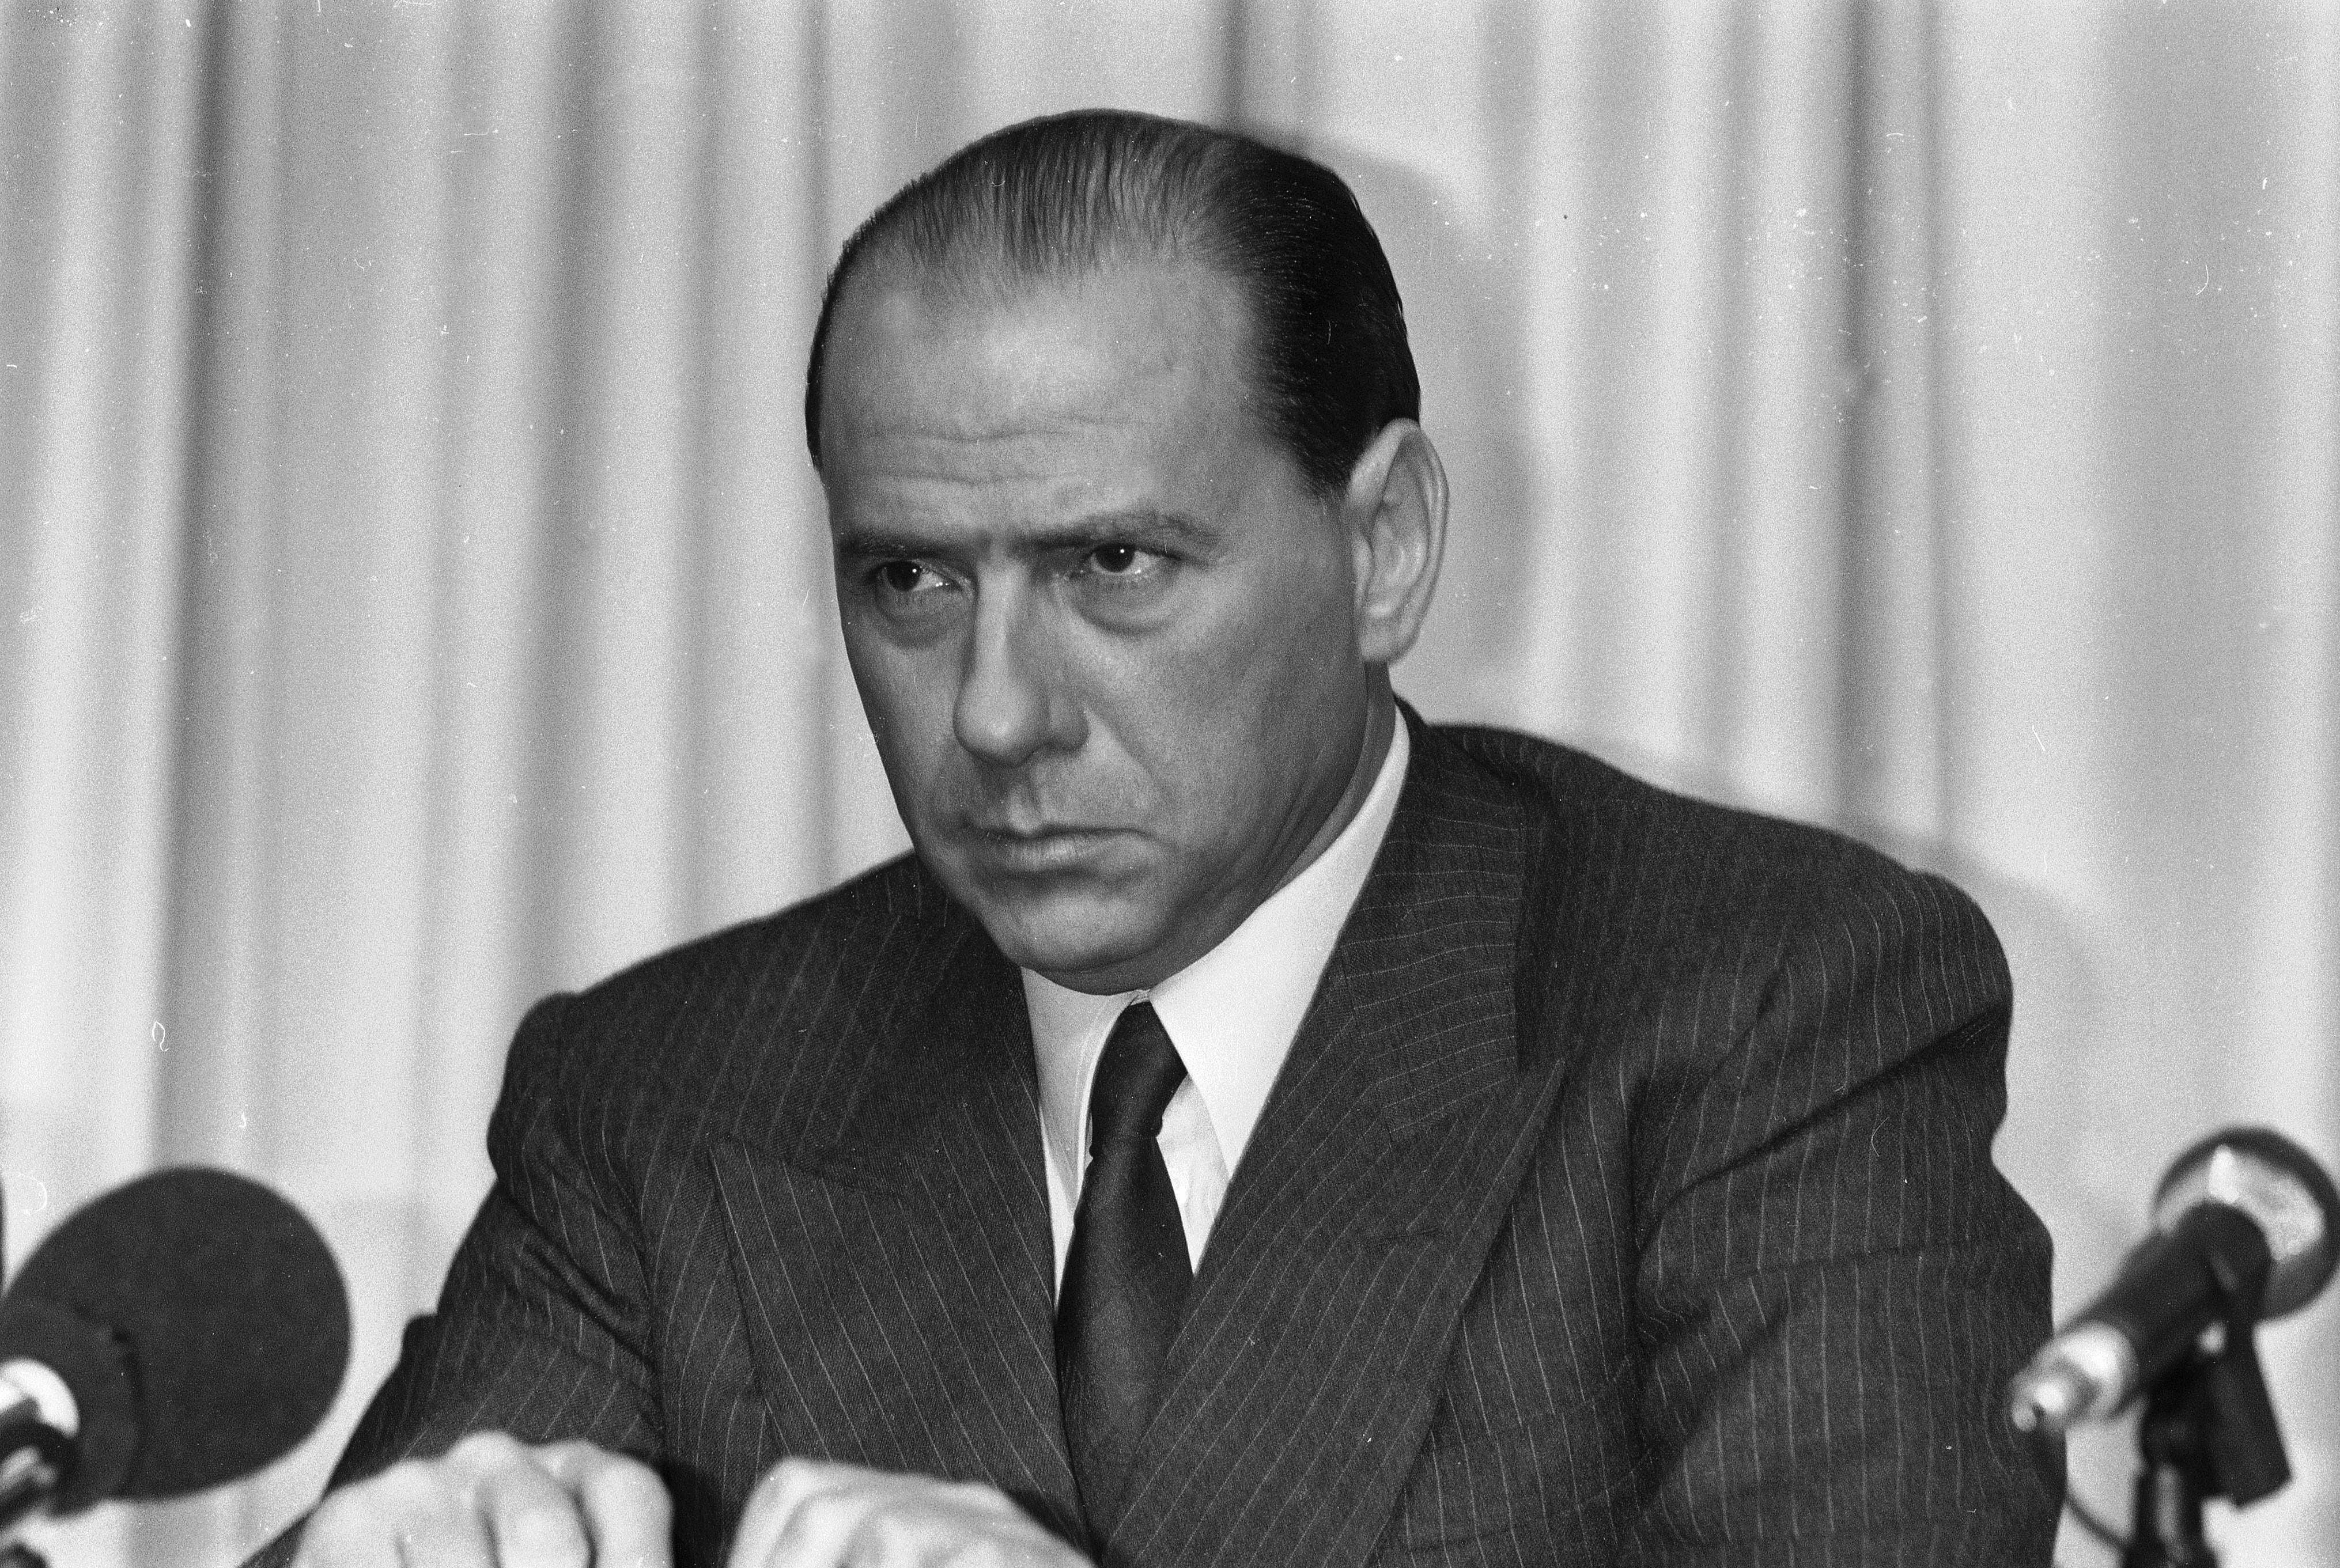 Berlusconi, pictured in 1980, was a central figure in Italian politics for decades